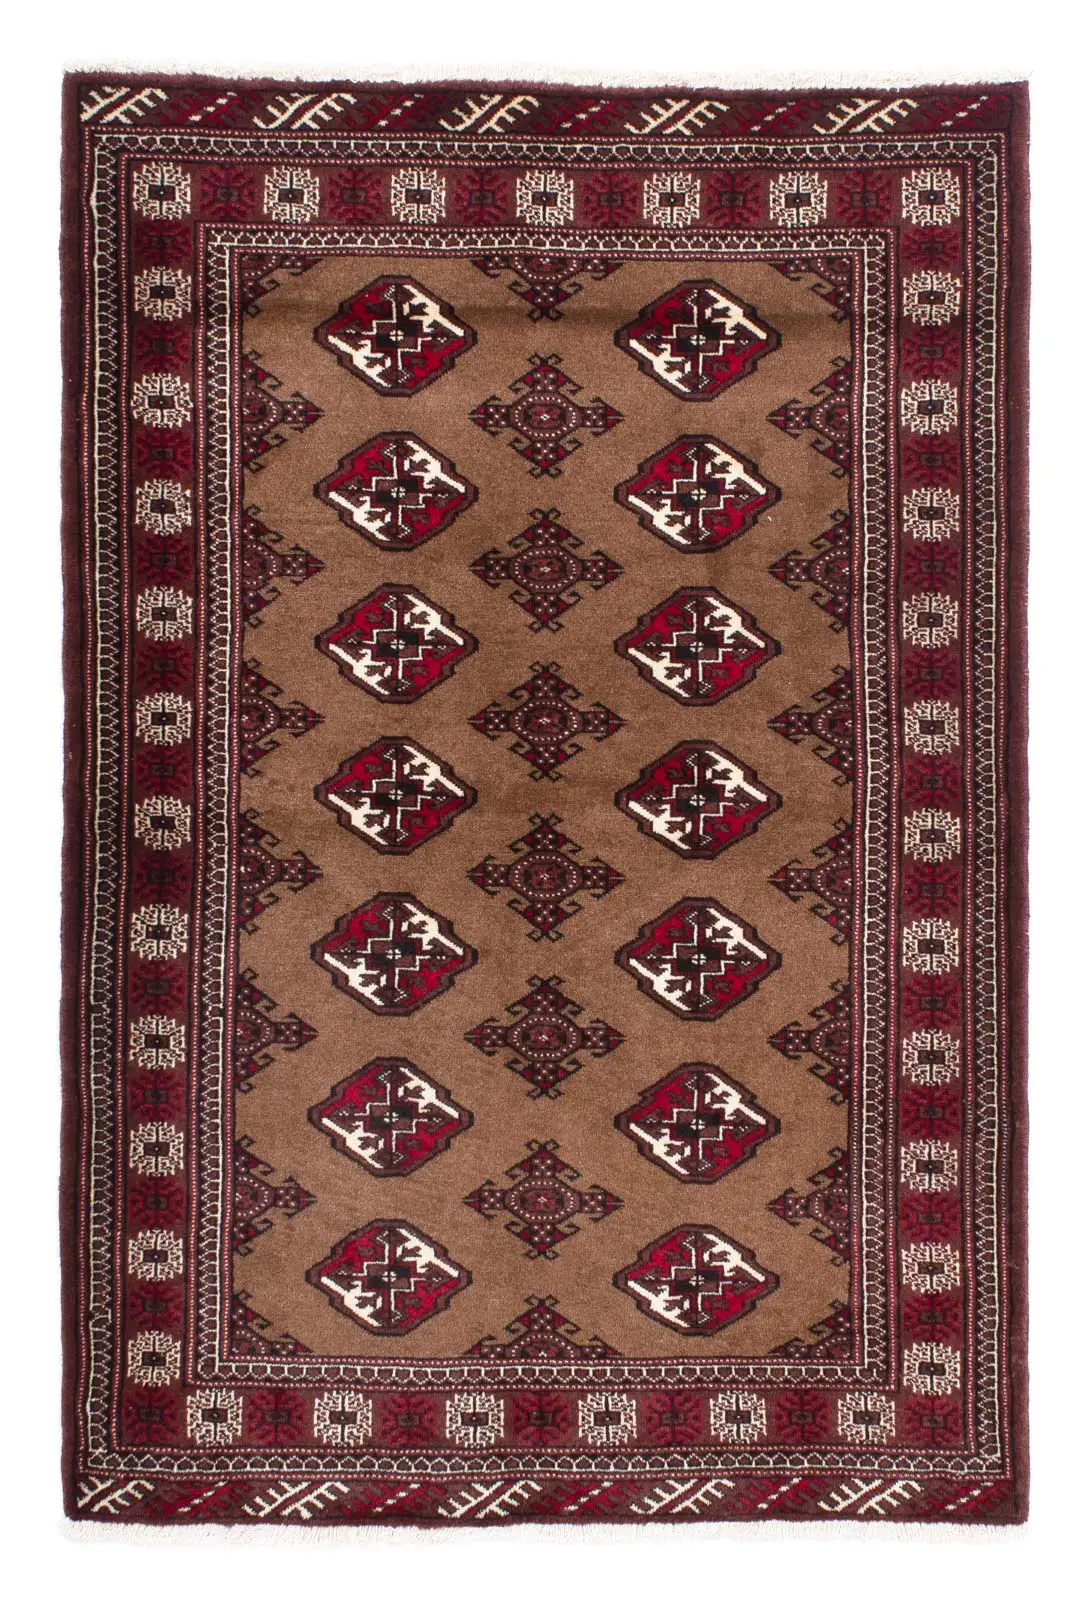 151 102 x - braun cm Teppich - Belutsch